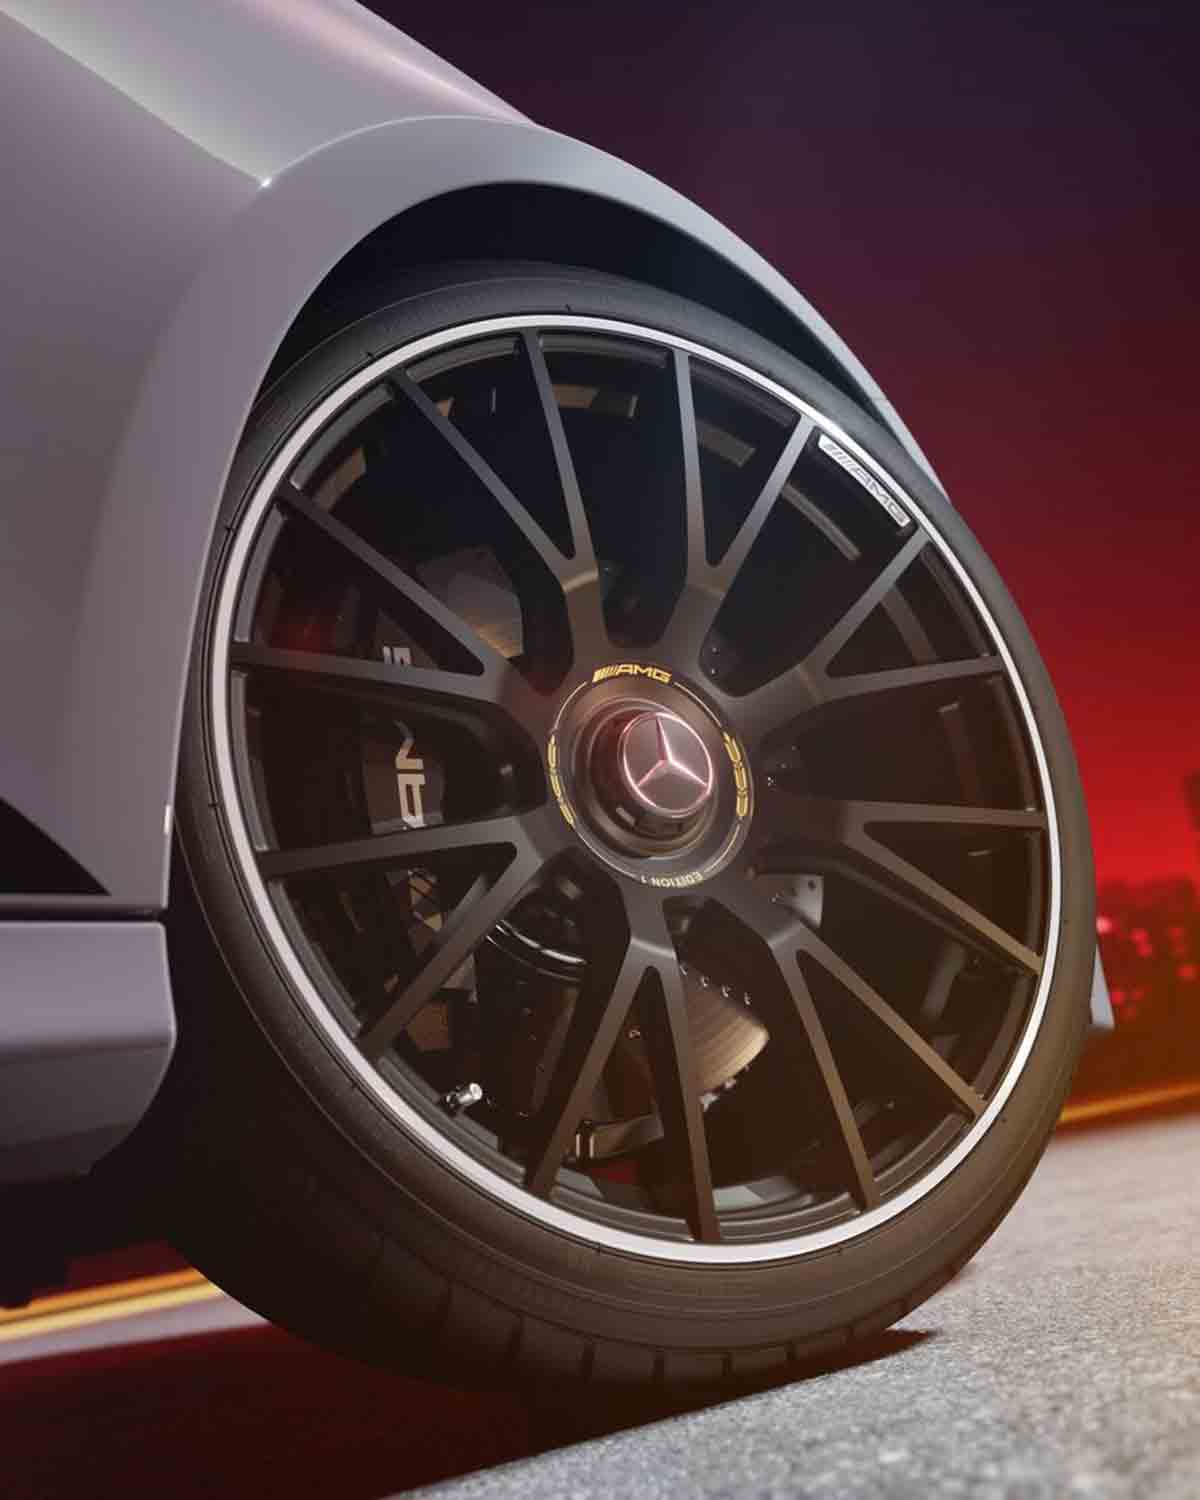 Mercedes-AMG E 53 vereint Leistung und Effizienz in der neuesten Hybrid-Innovation (Instagram / @mercedesamg)